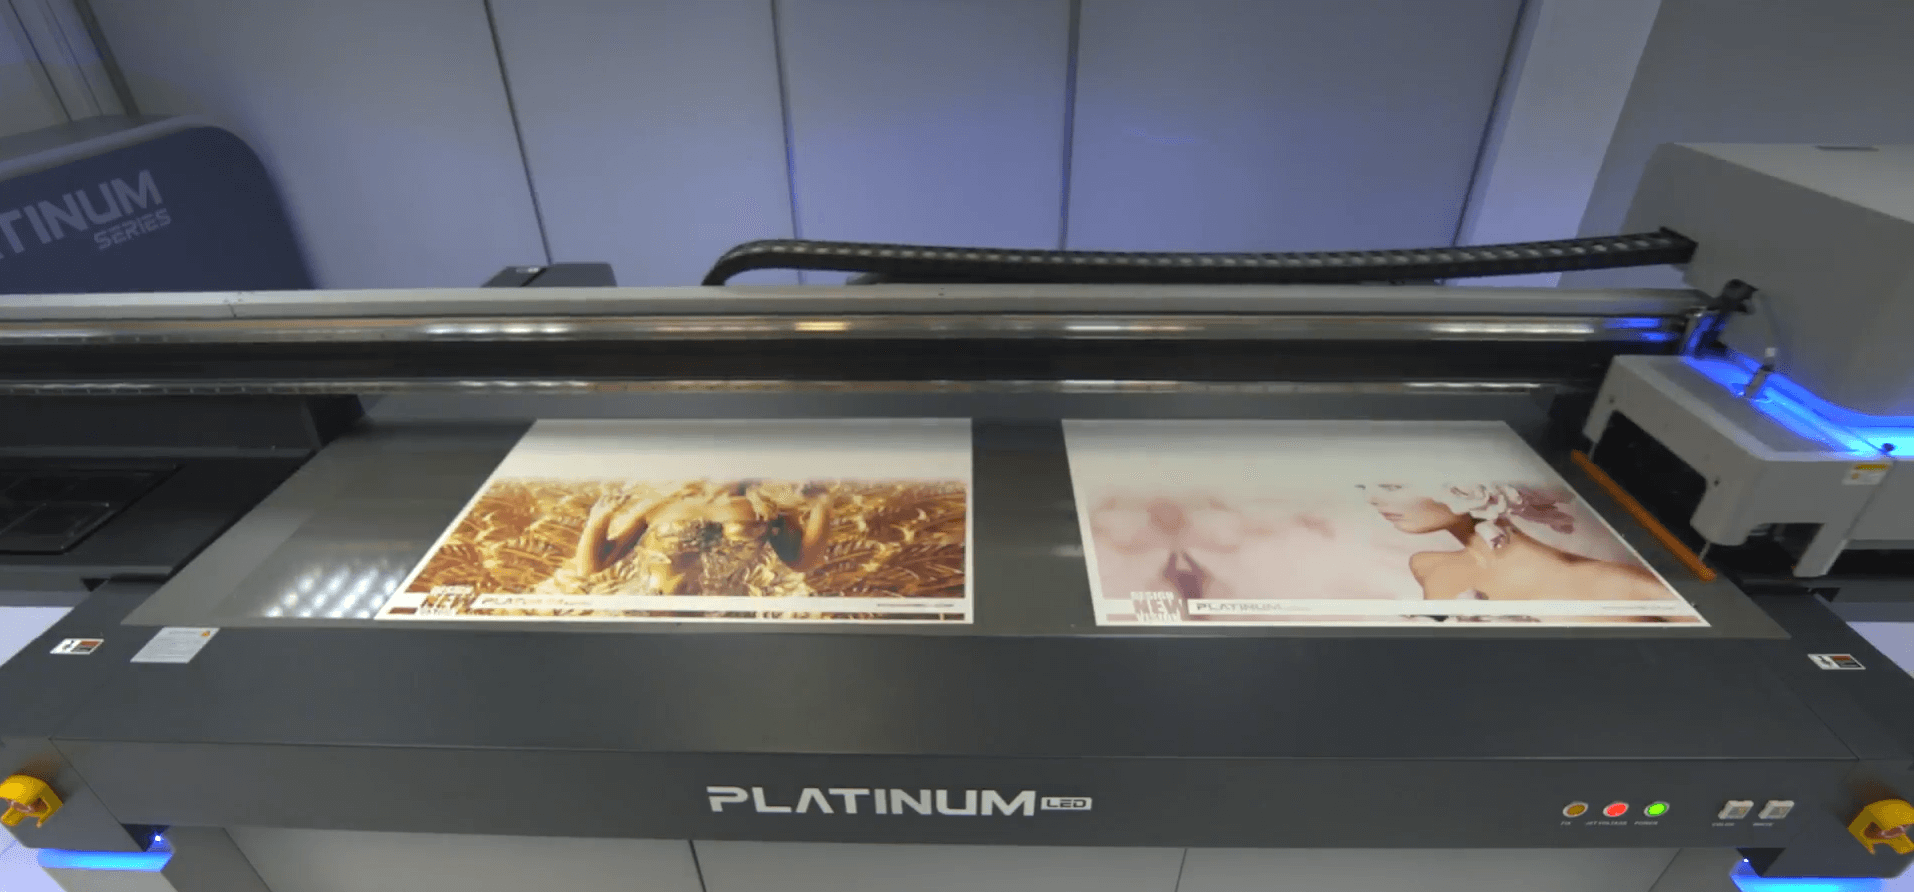 Printer Uv Flatbed Liyu Platinum